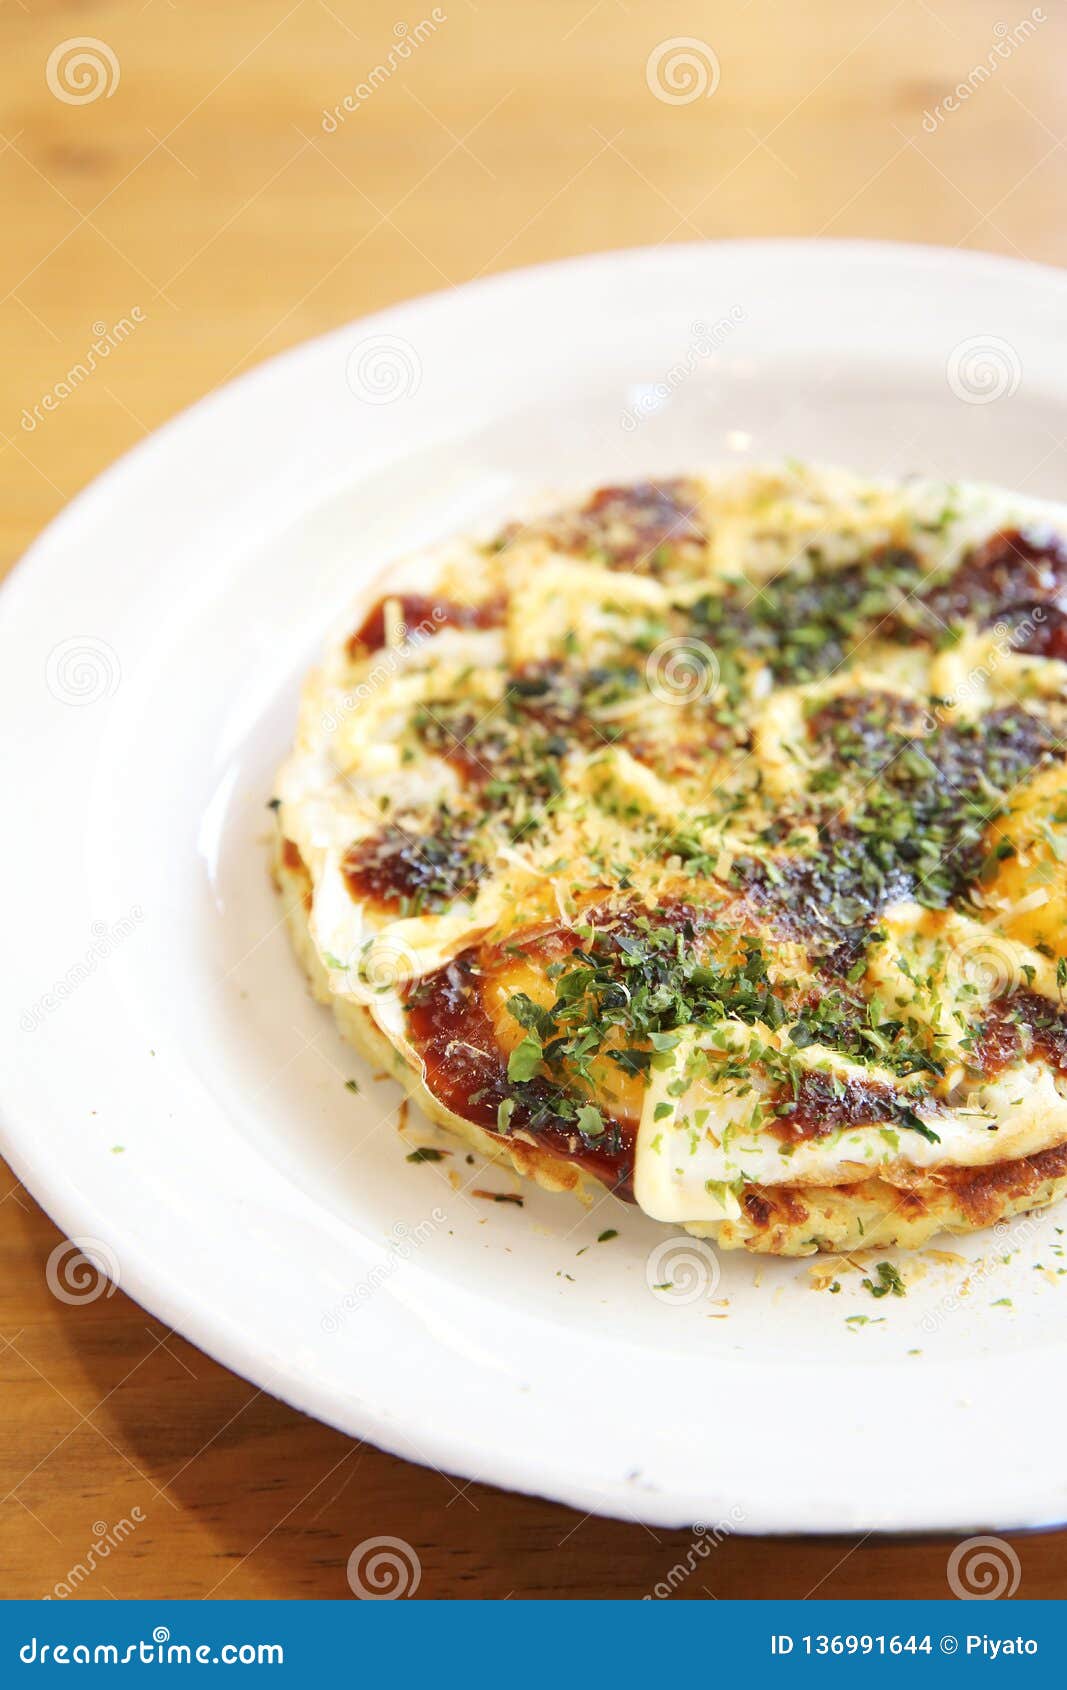 Japanese Food Okonomiyaki , Japanese Pizza Stock Photo - Image of ...